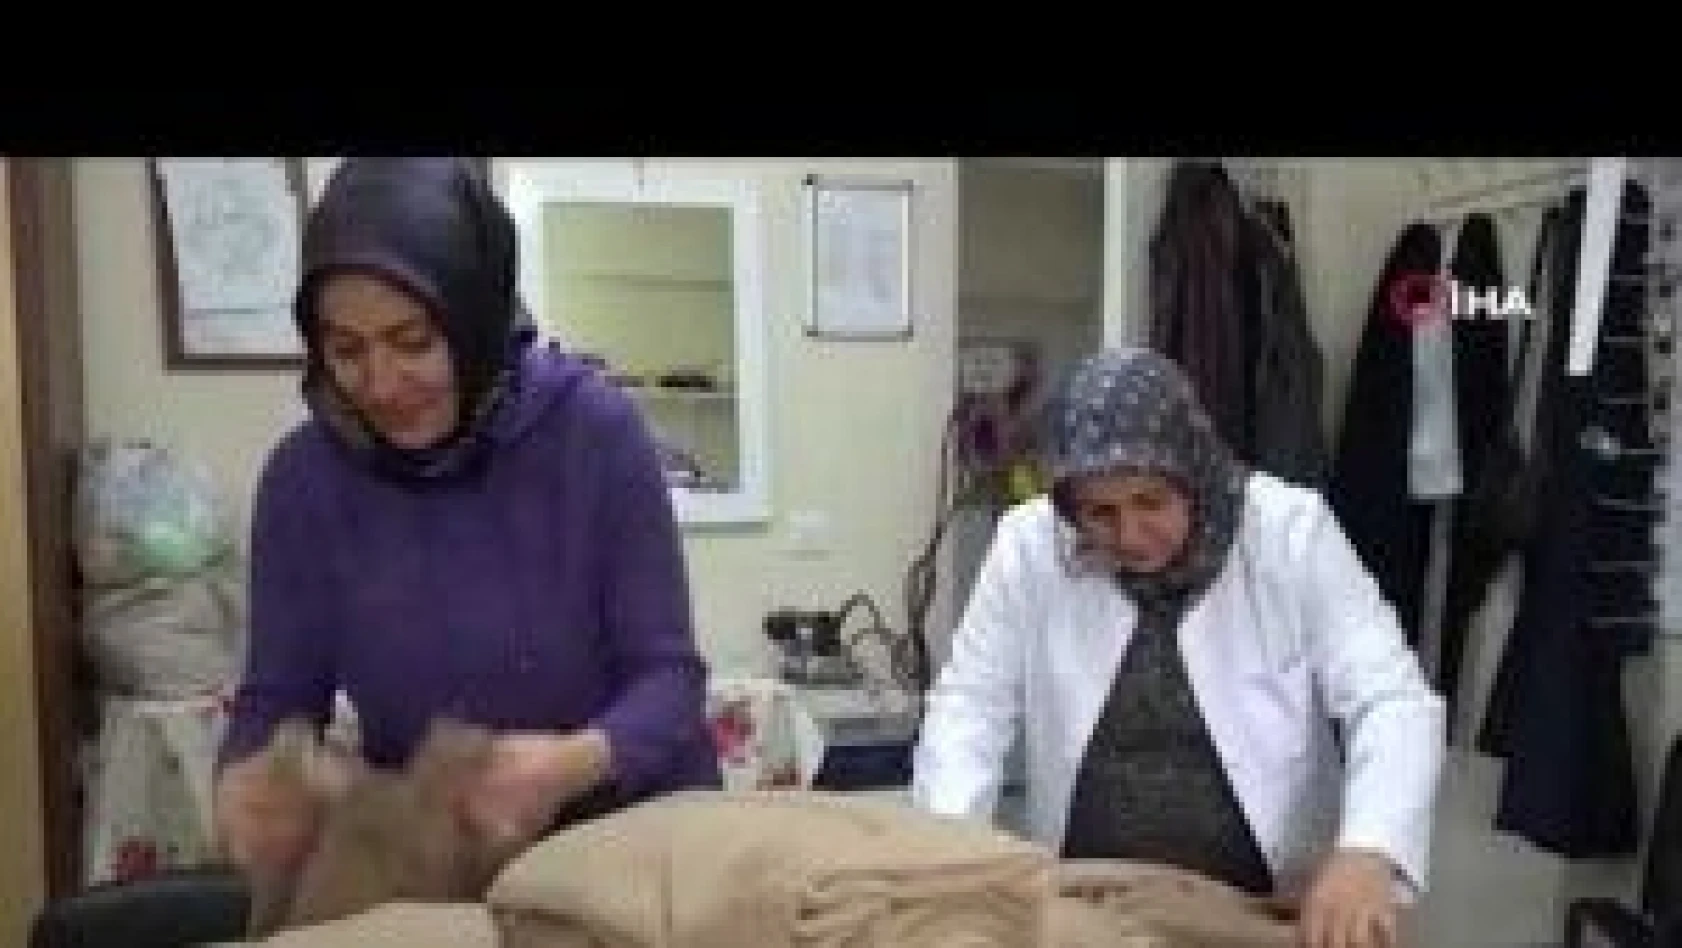 Bitlis'te kadınlar depremzedeler üşümesin diye kolları sıvadı